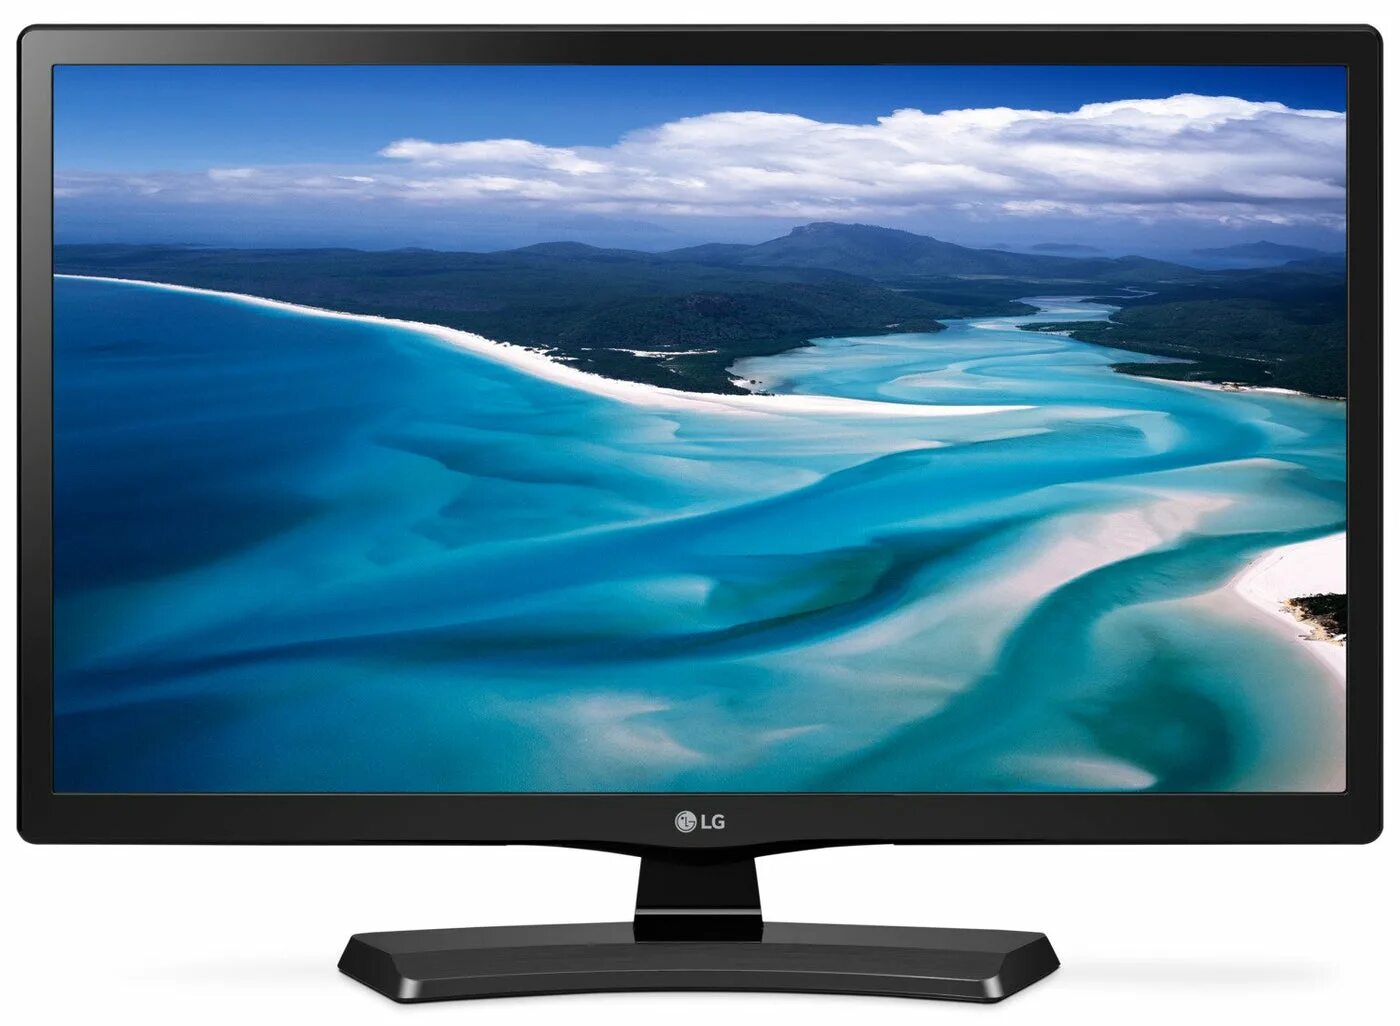 LG 24 Smart TV. Телевизор LG 24lb540u. Samsung 24 p2470hd. Led телевизор 24 LG 24lh451ueac.